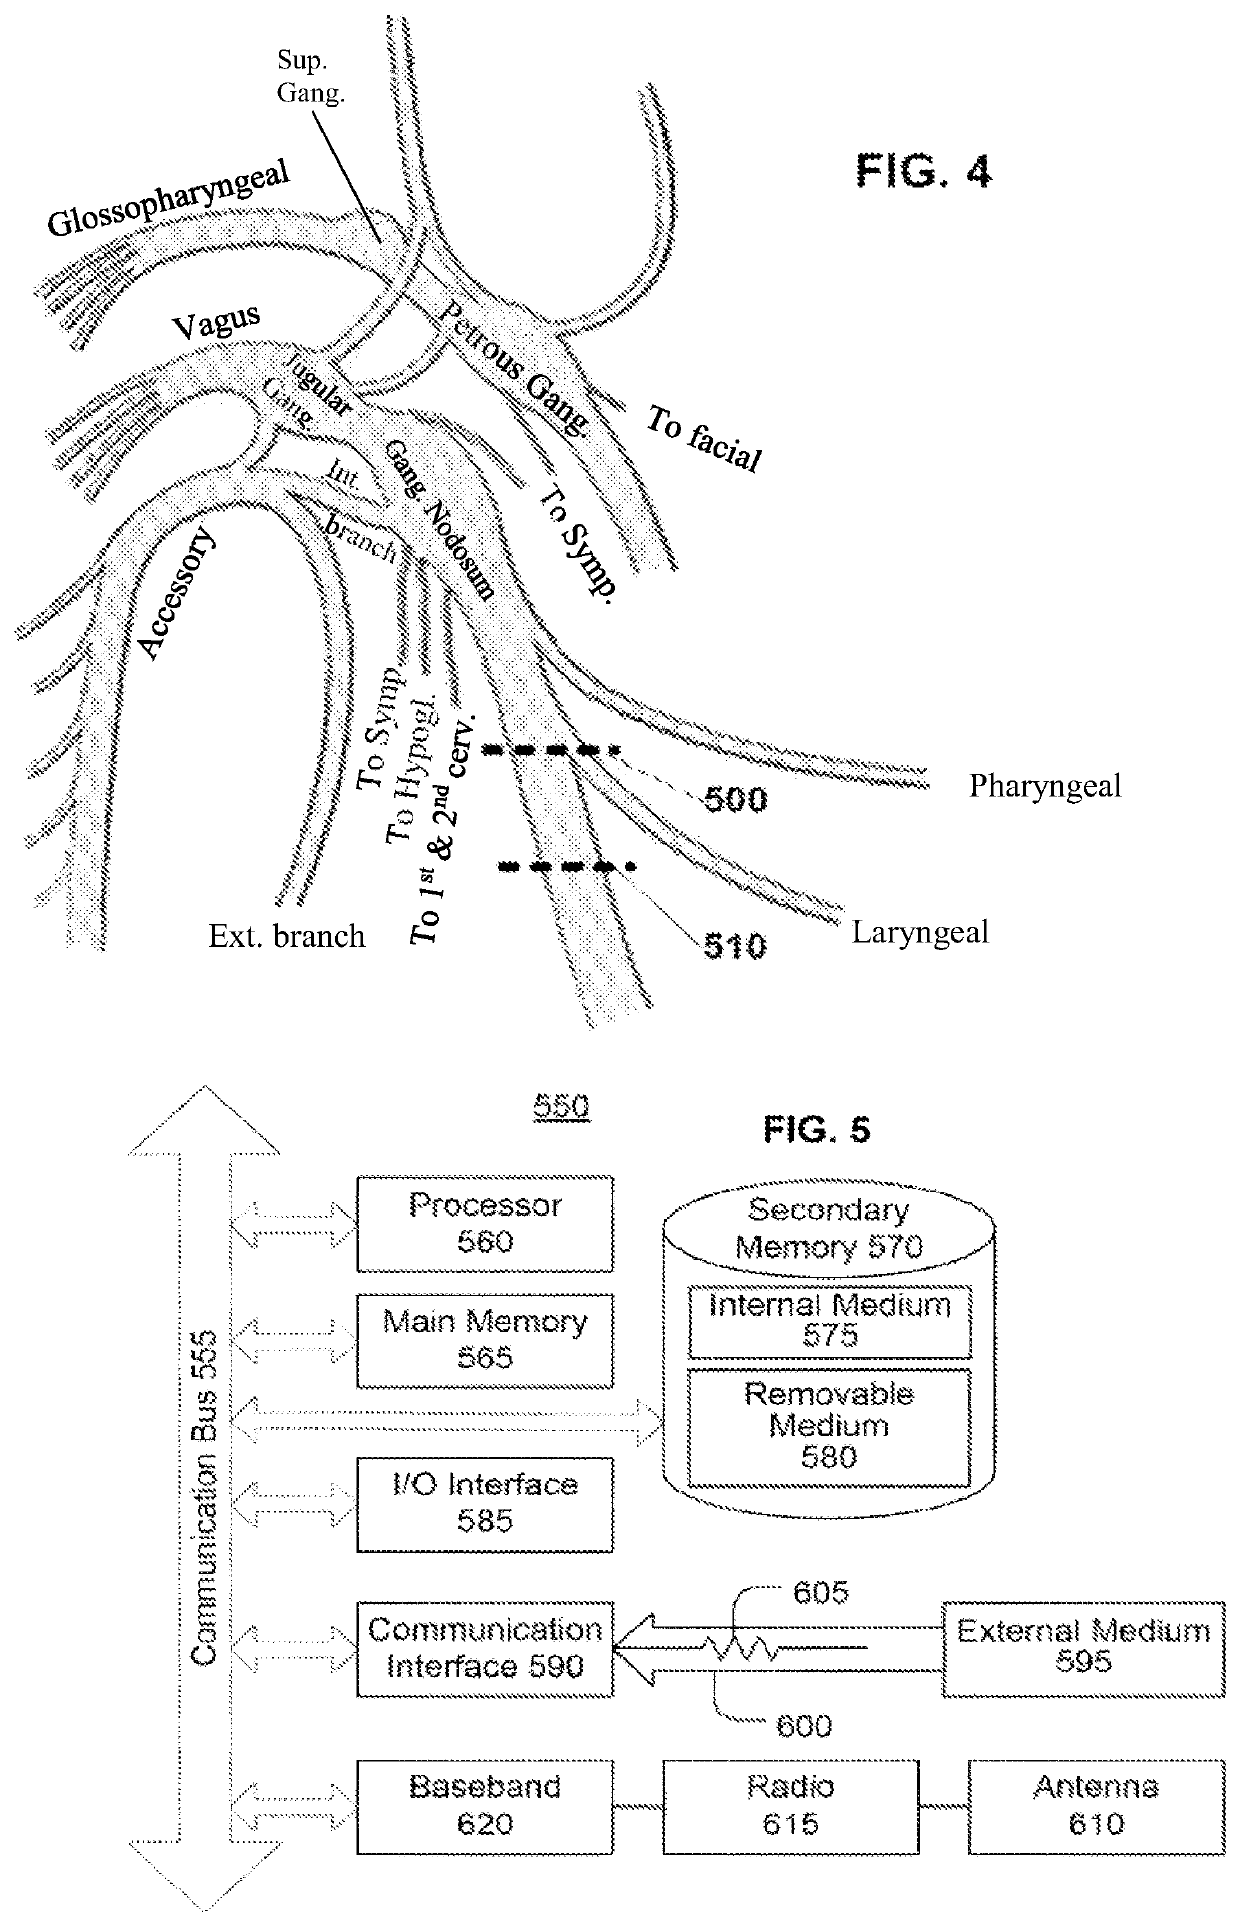 Parasympathetic activation by vagus nerve stimulation